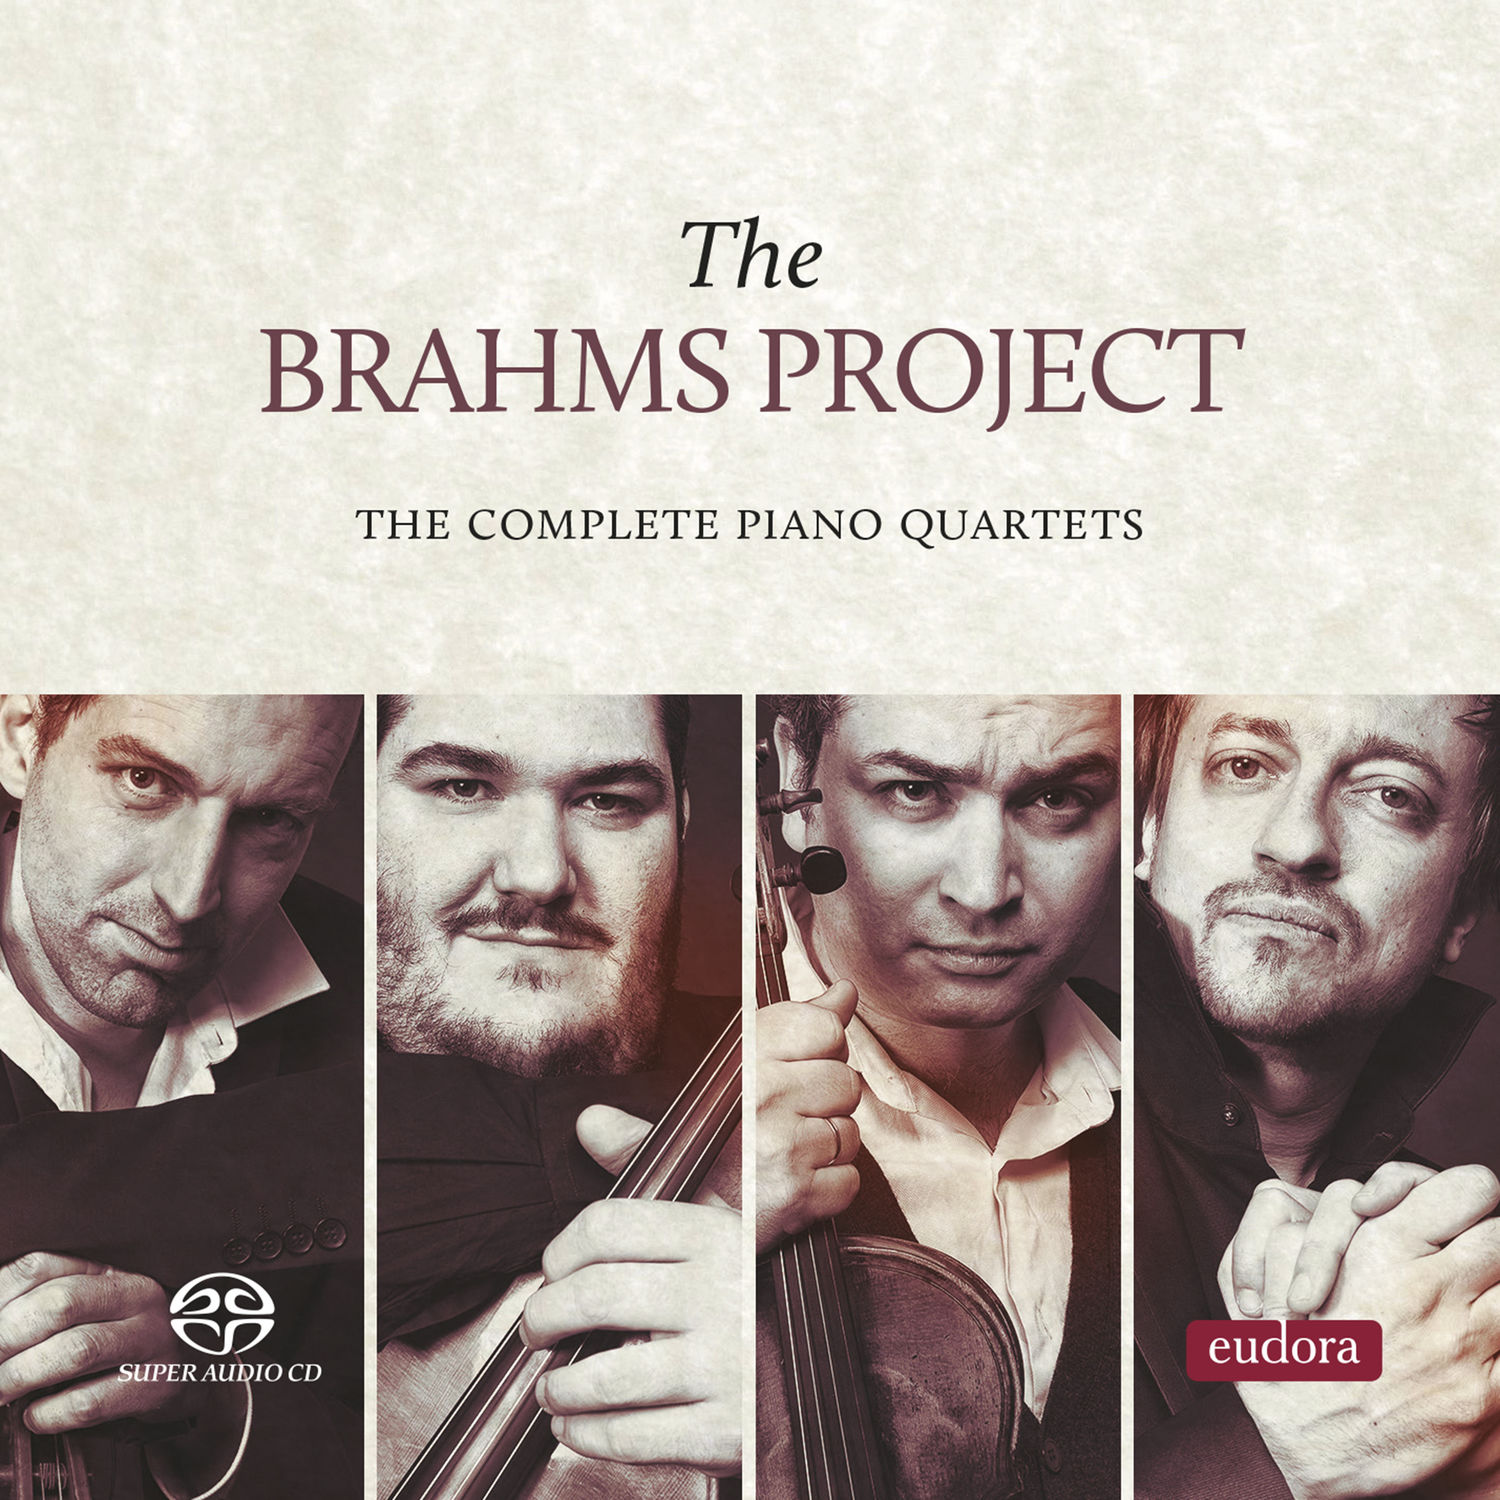 The Brahms Project – The Brahms Project – The Complete Piano Quartets